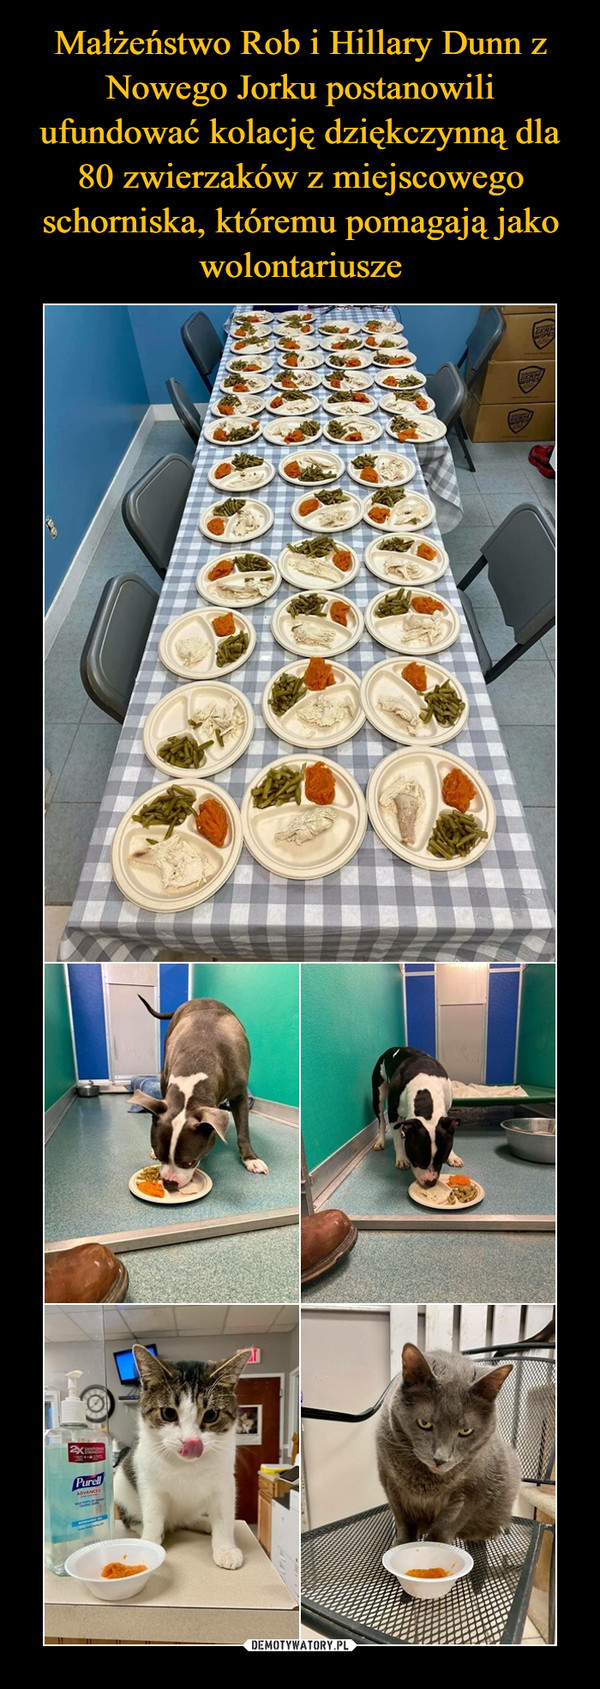 Małżeństwo Rob i Hillary Dunn z Nowego Jorku postanowili ufundować kolację dziękczynną dla 80 zwierzaków z miejscowego schorniska, któremu pomagają jako wolontariusze